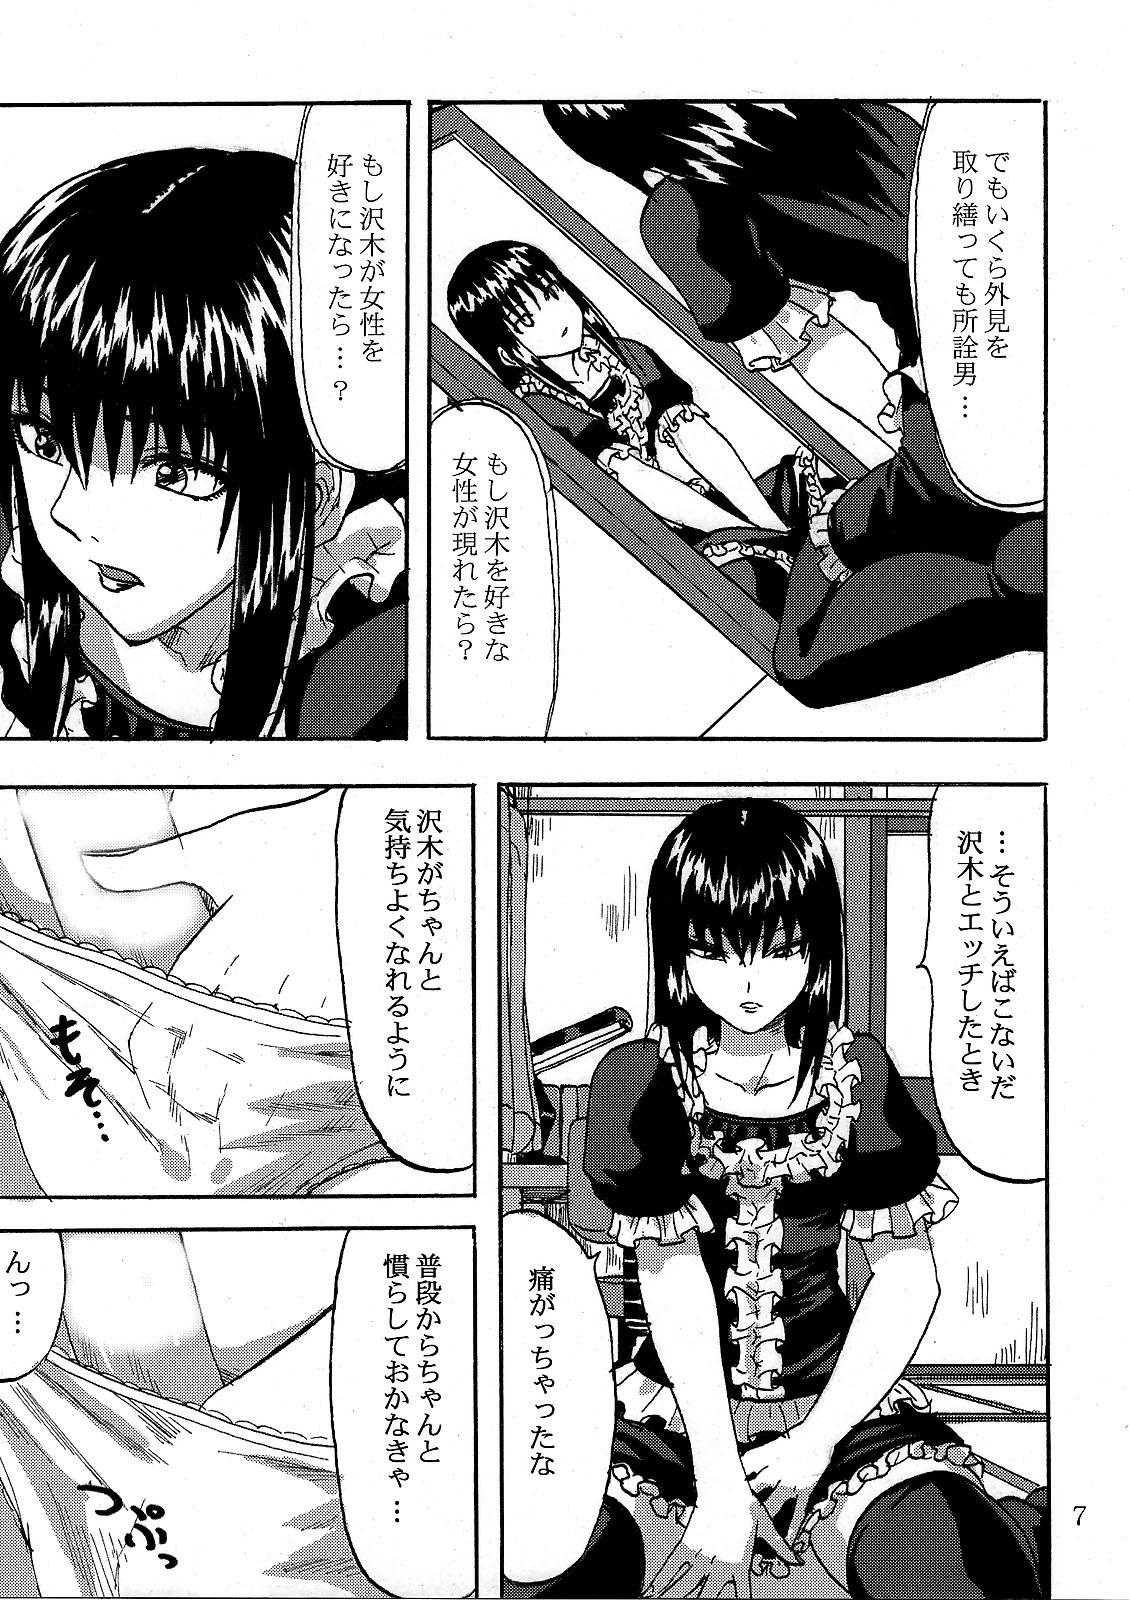 Futanari Futari aruki 2 - Moyashimon Pica - Page 7